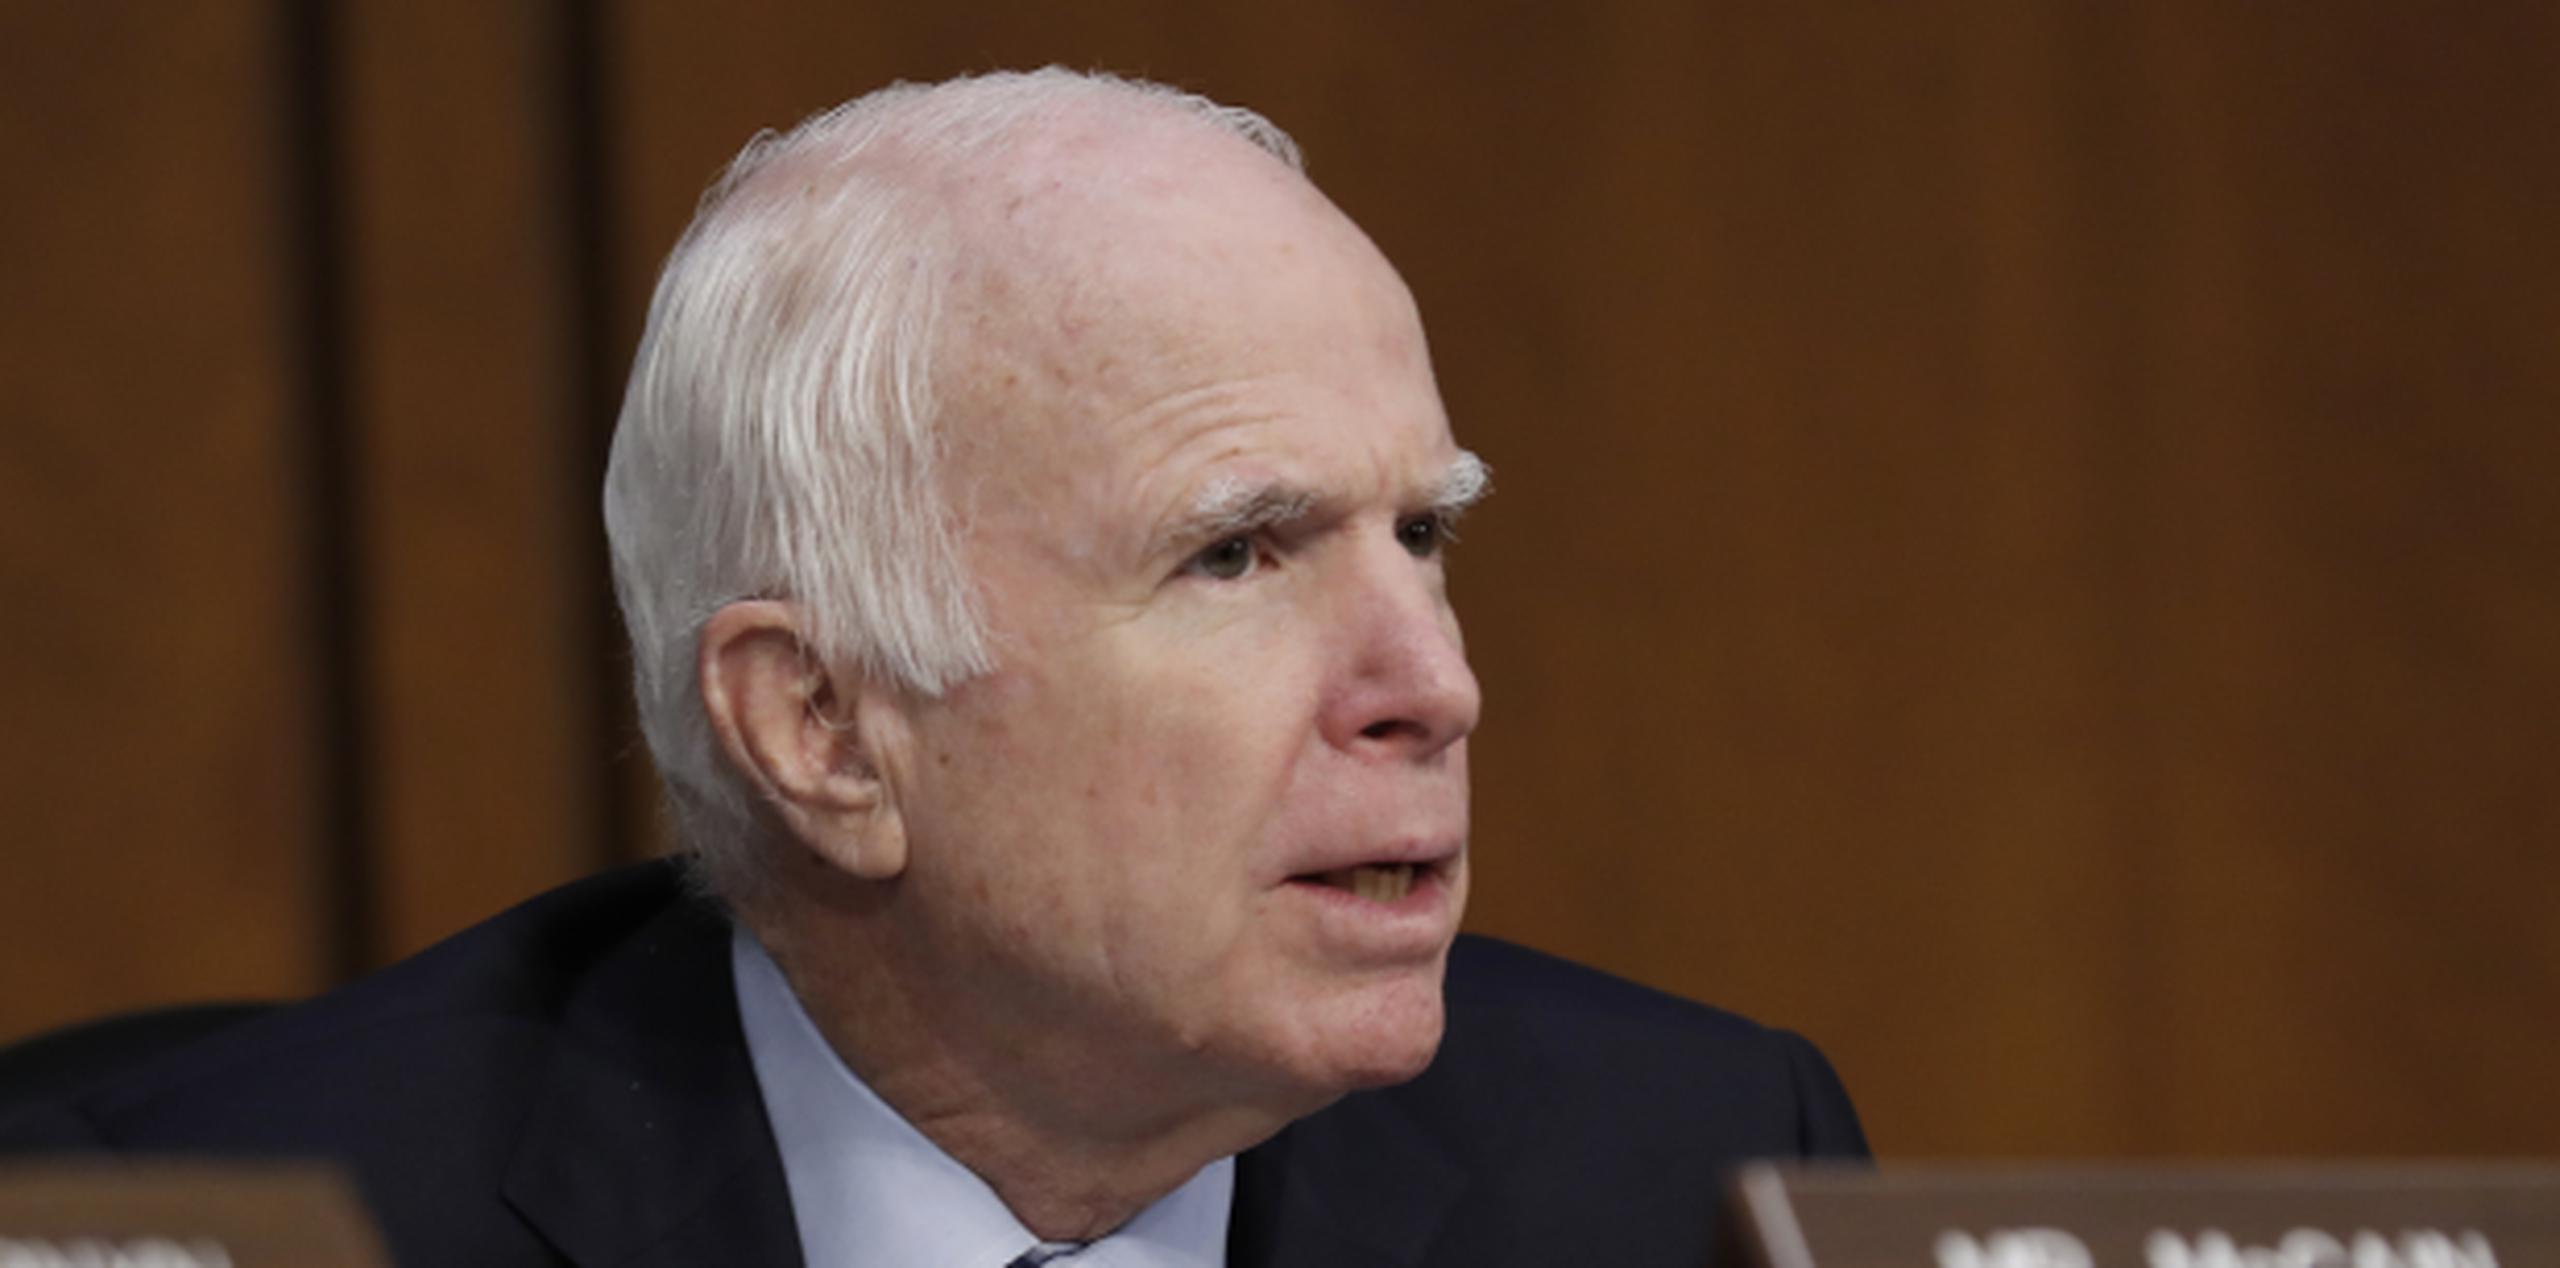 John McCain. (AP / Alex Brandon)